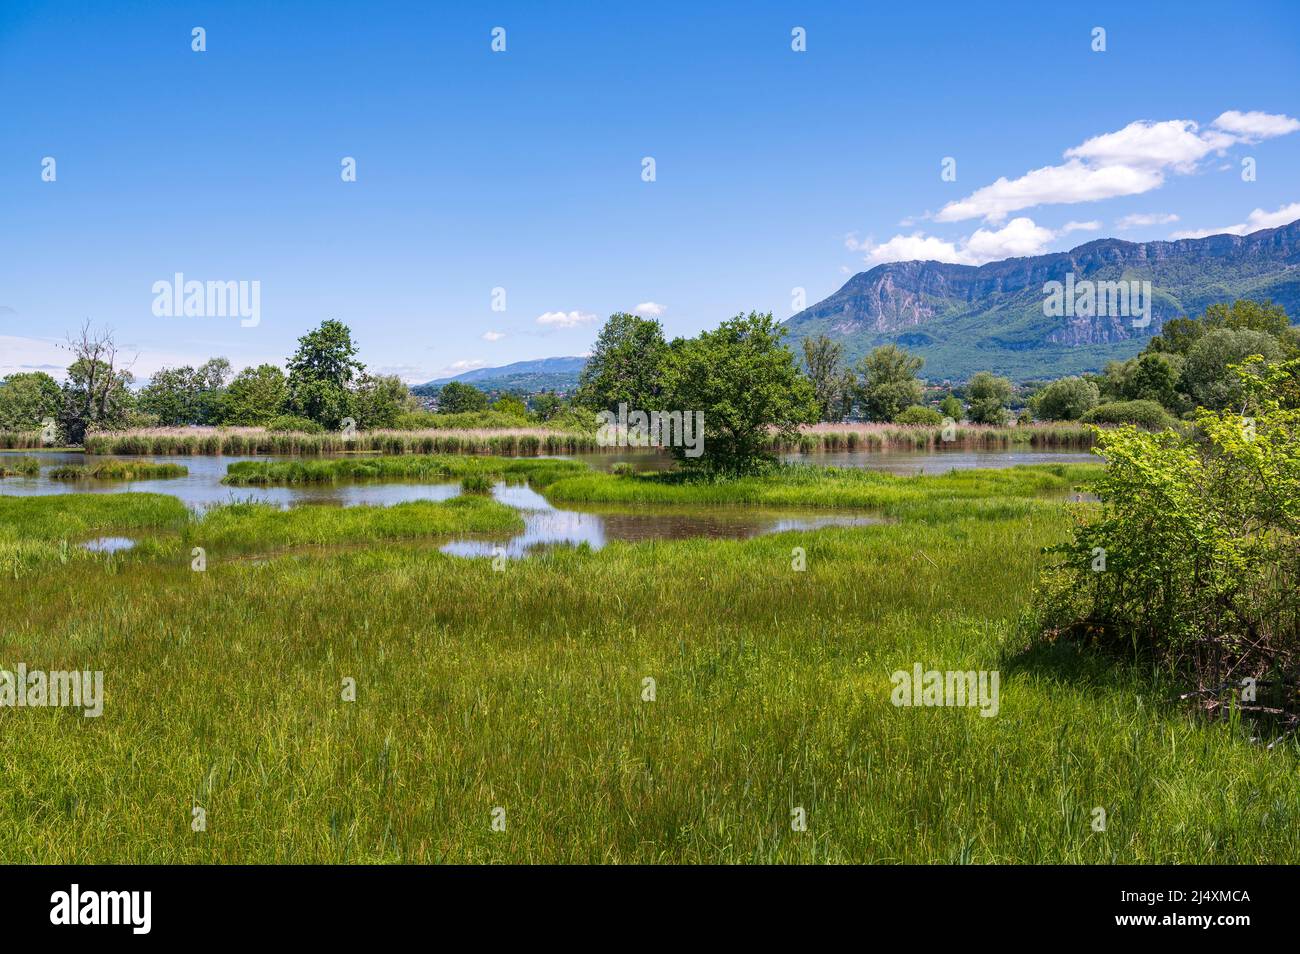 Ein Sumpf am Lac du Bourget, dem größten See der französischen Alpen, am Le Bourget-du-Lac, Frankreich Stockfoto